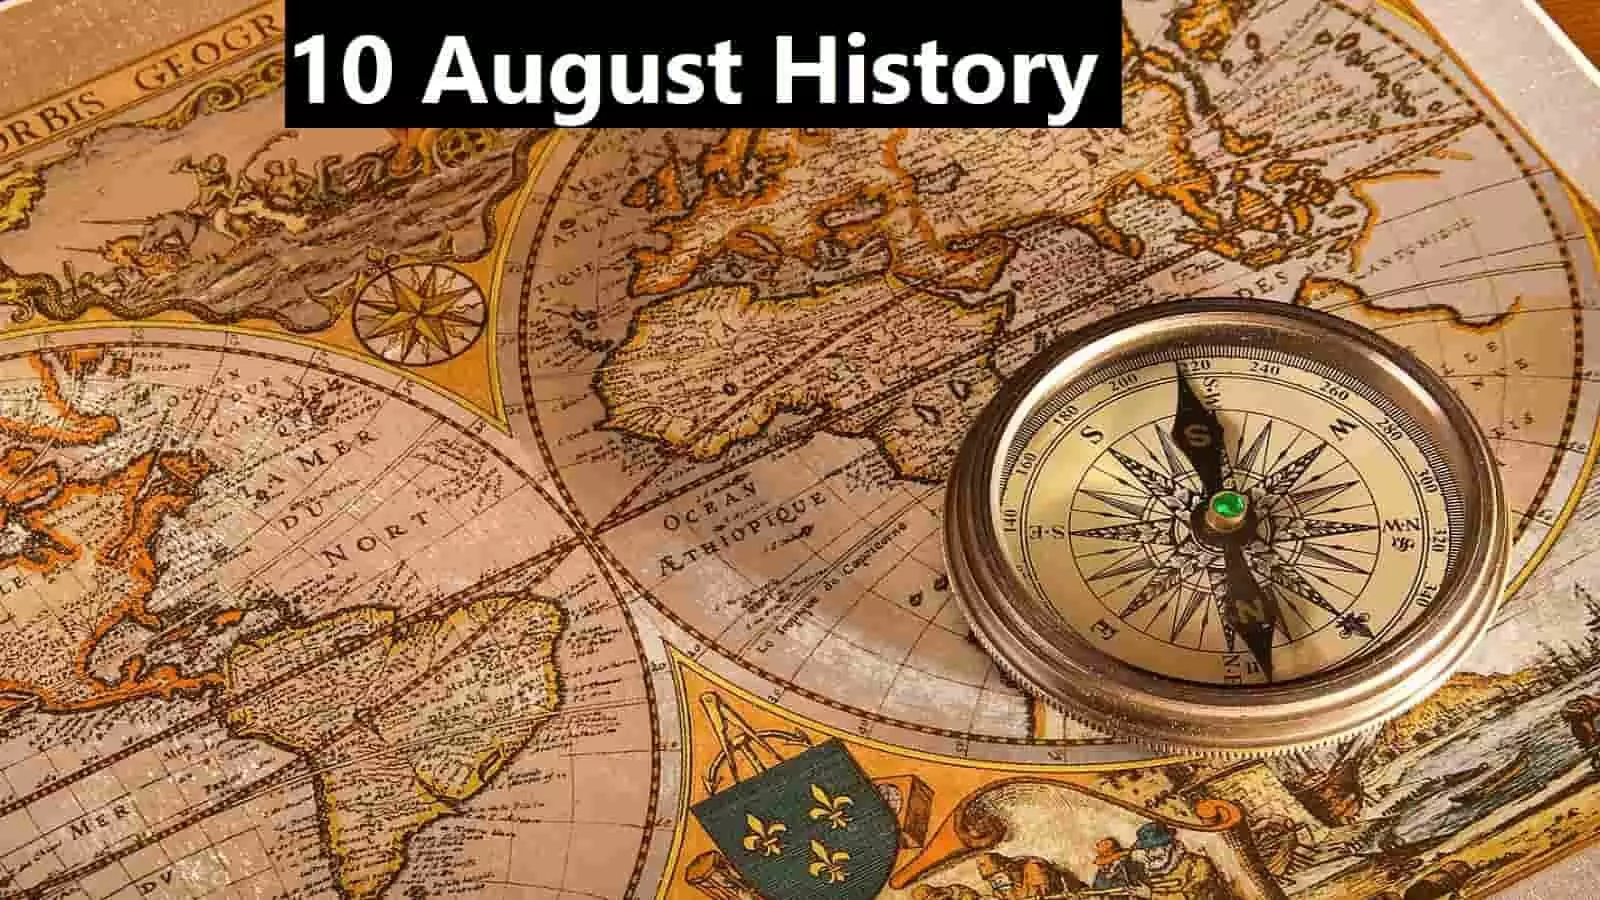 10 August History: बेहद ख़ास है 10 अगस्त का दिन, जानें इतिहास एवं महत्व